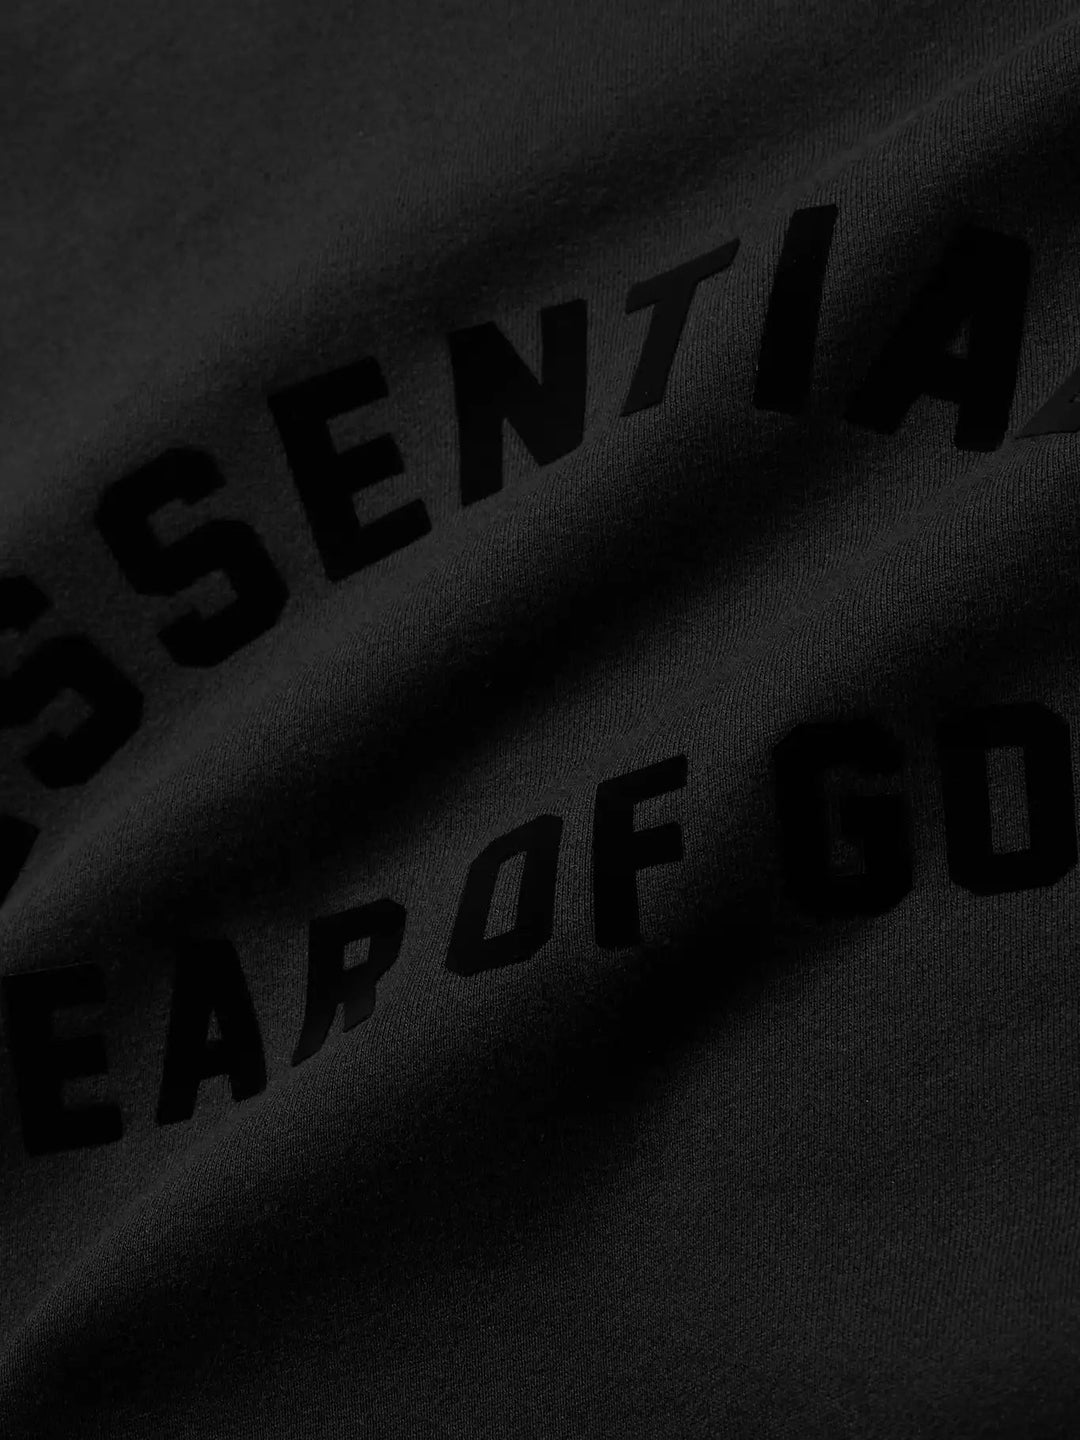 Fear Of God Essentials Jet Black Hoodie - INSTAKICKSZ LTD